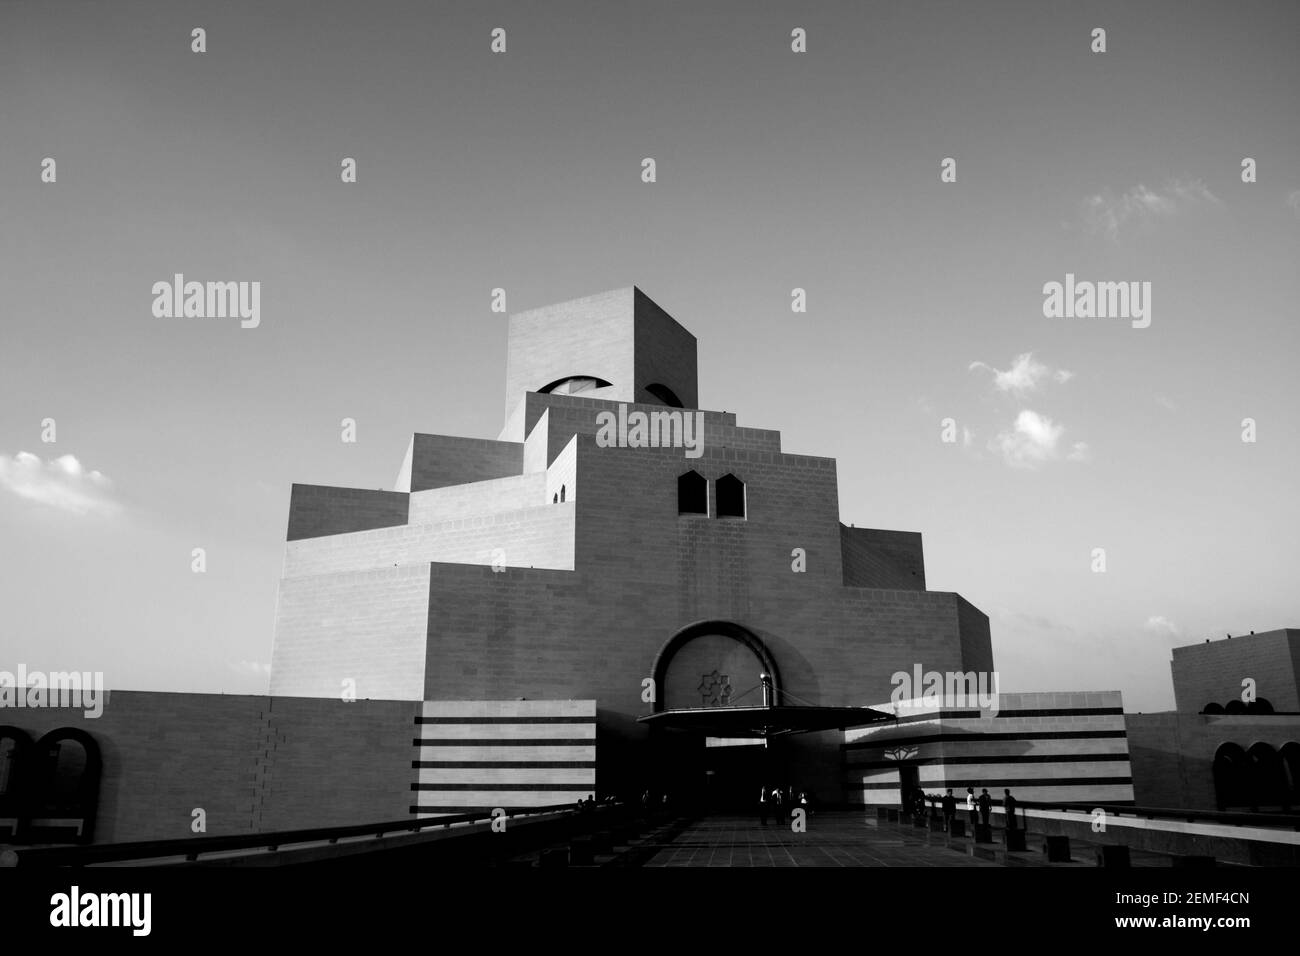 Monochrom, schwarz-weiß, Bild des Museums für Islamische Kunst, entworfen vom Architekten I. M. Pei, Doha, Katar Stockfoto